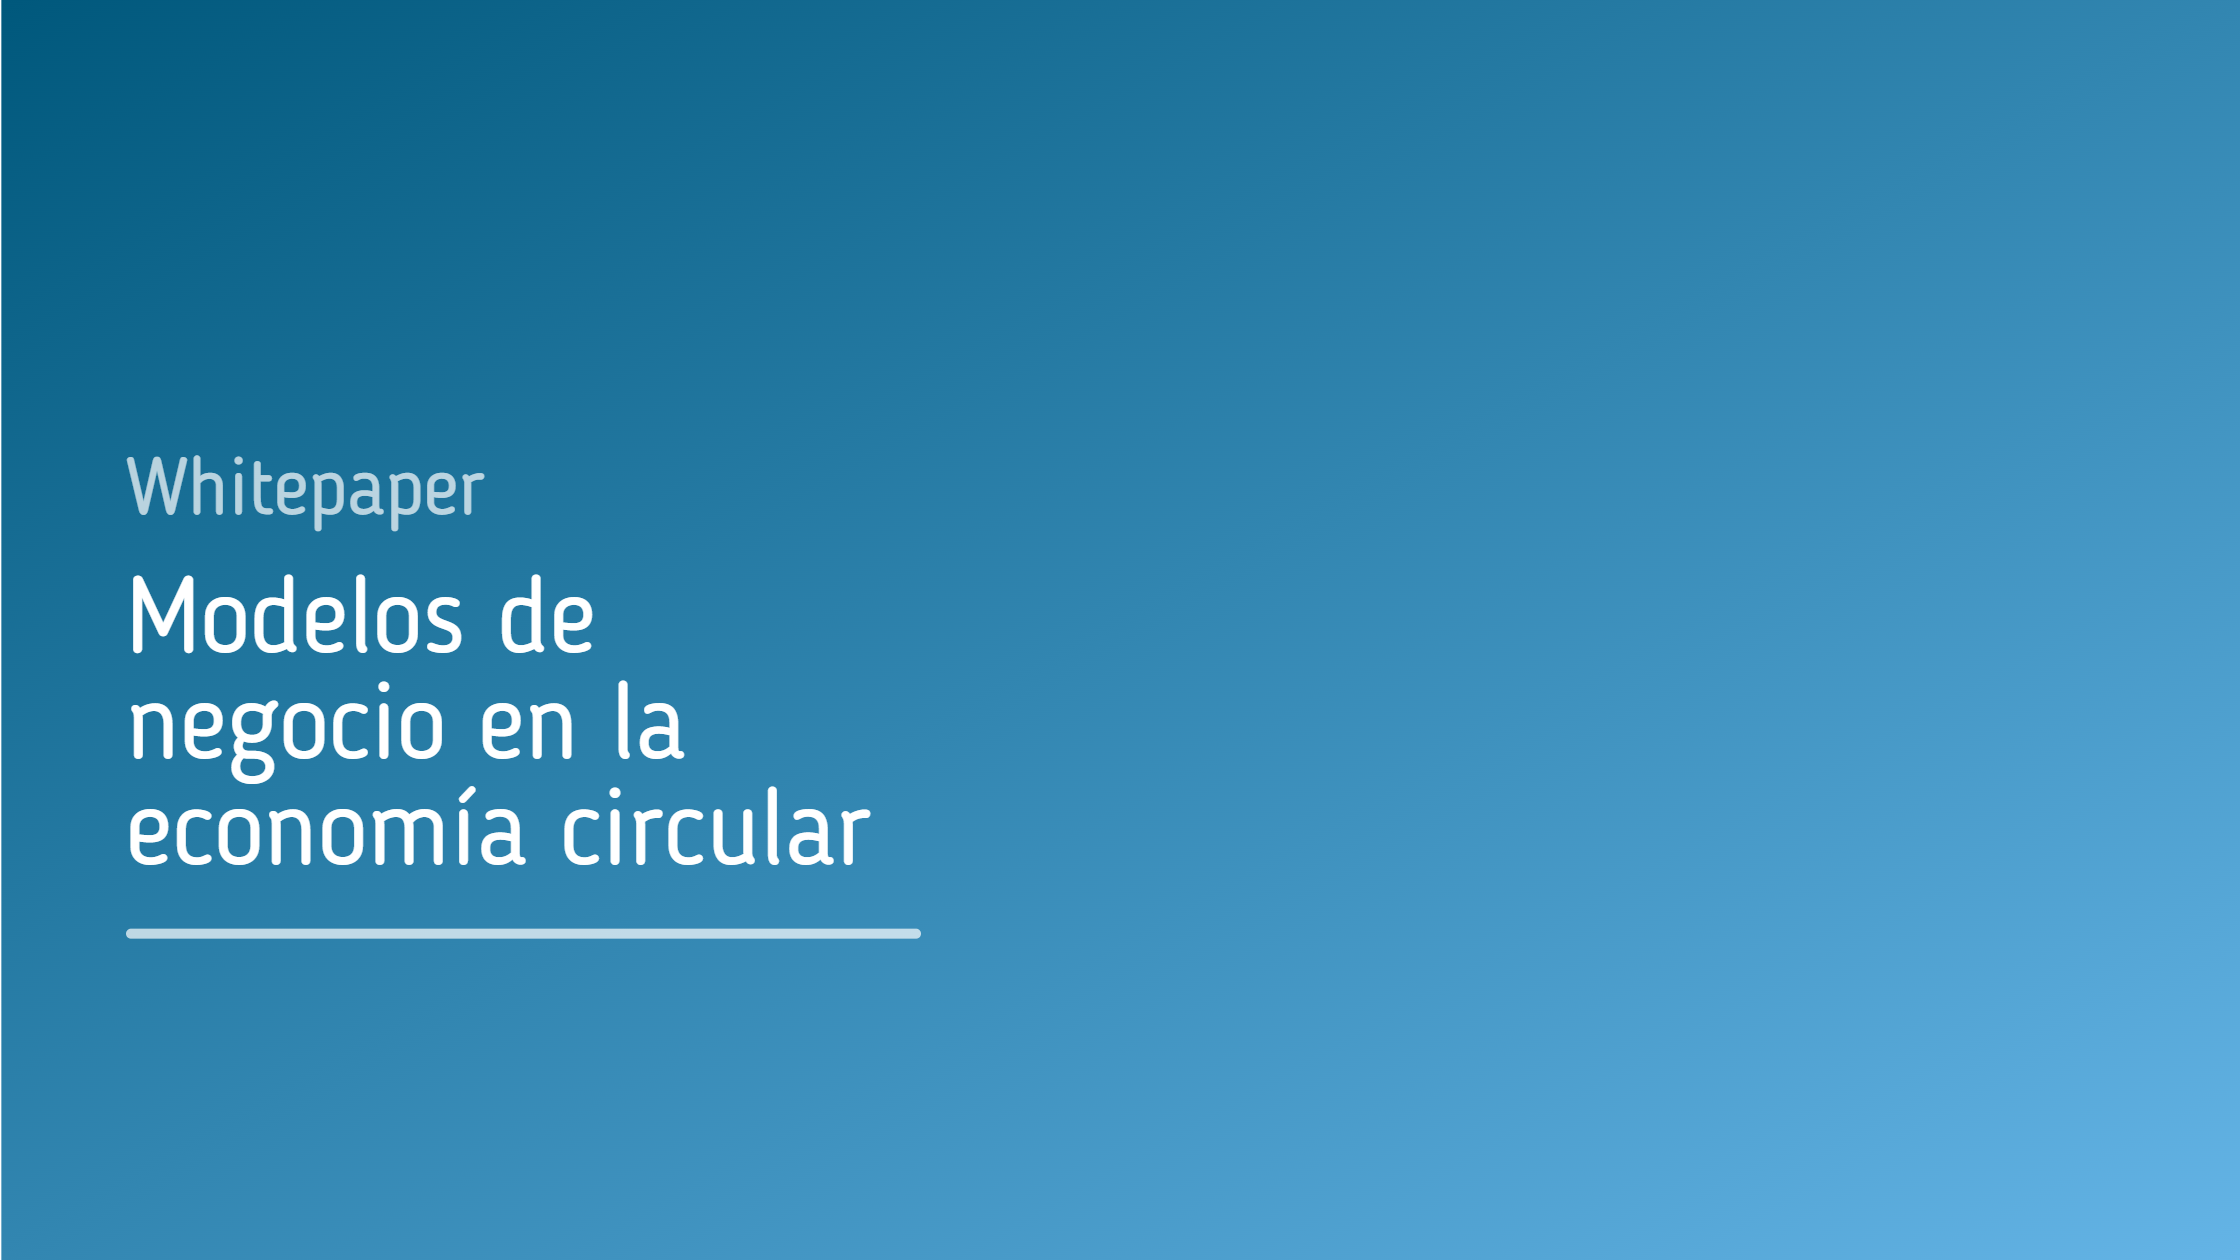 Whitepaper_Modelos_de_negocio_en_la_economía_circular